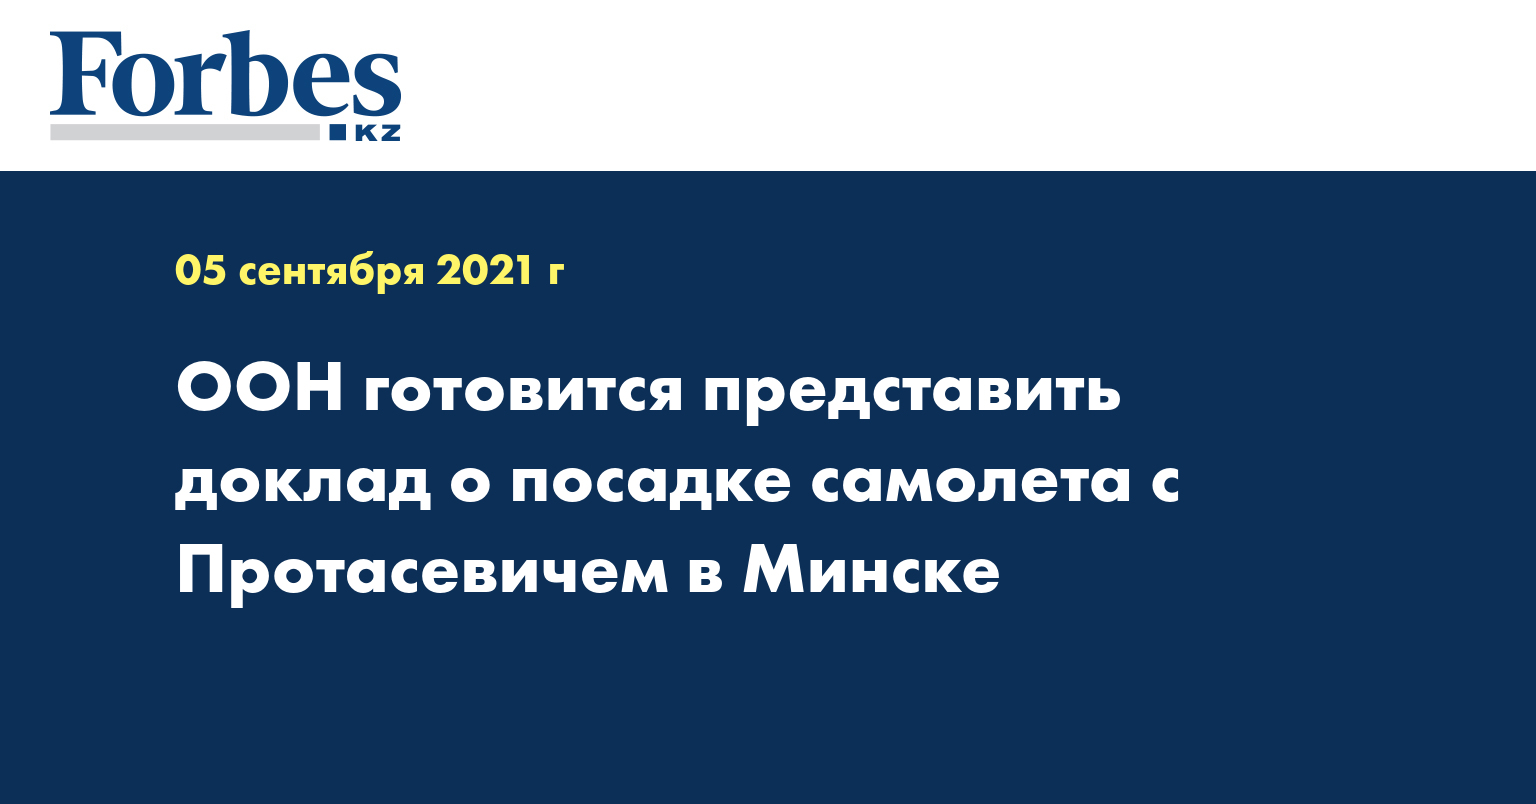 ООН готовится представить доклад о посадке самолета с Протасевичем в Минске